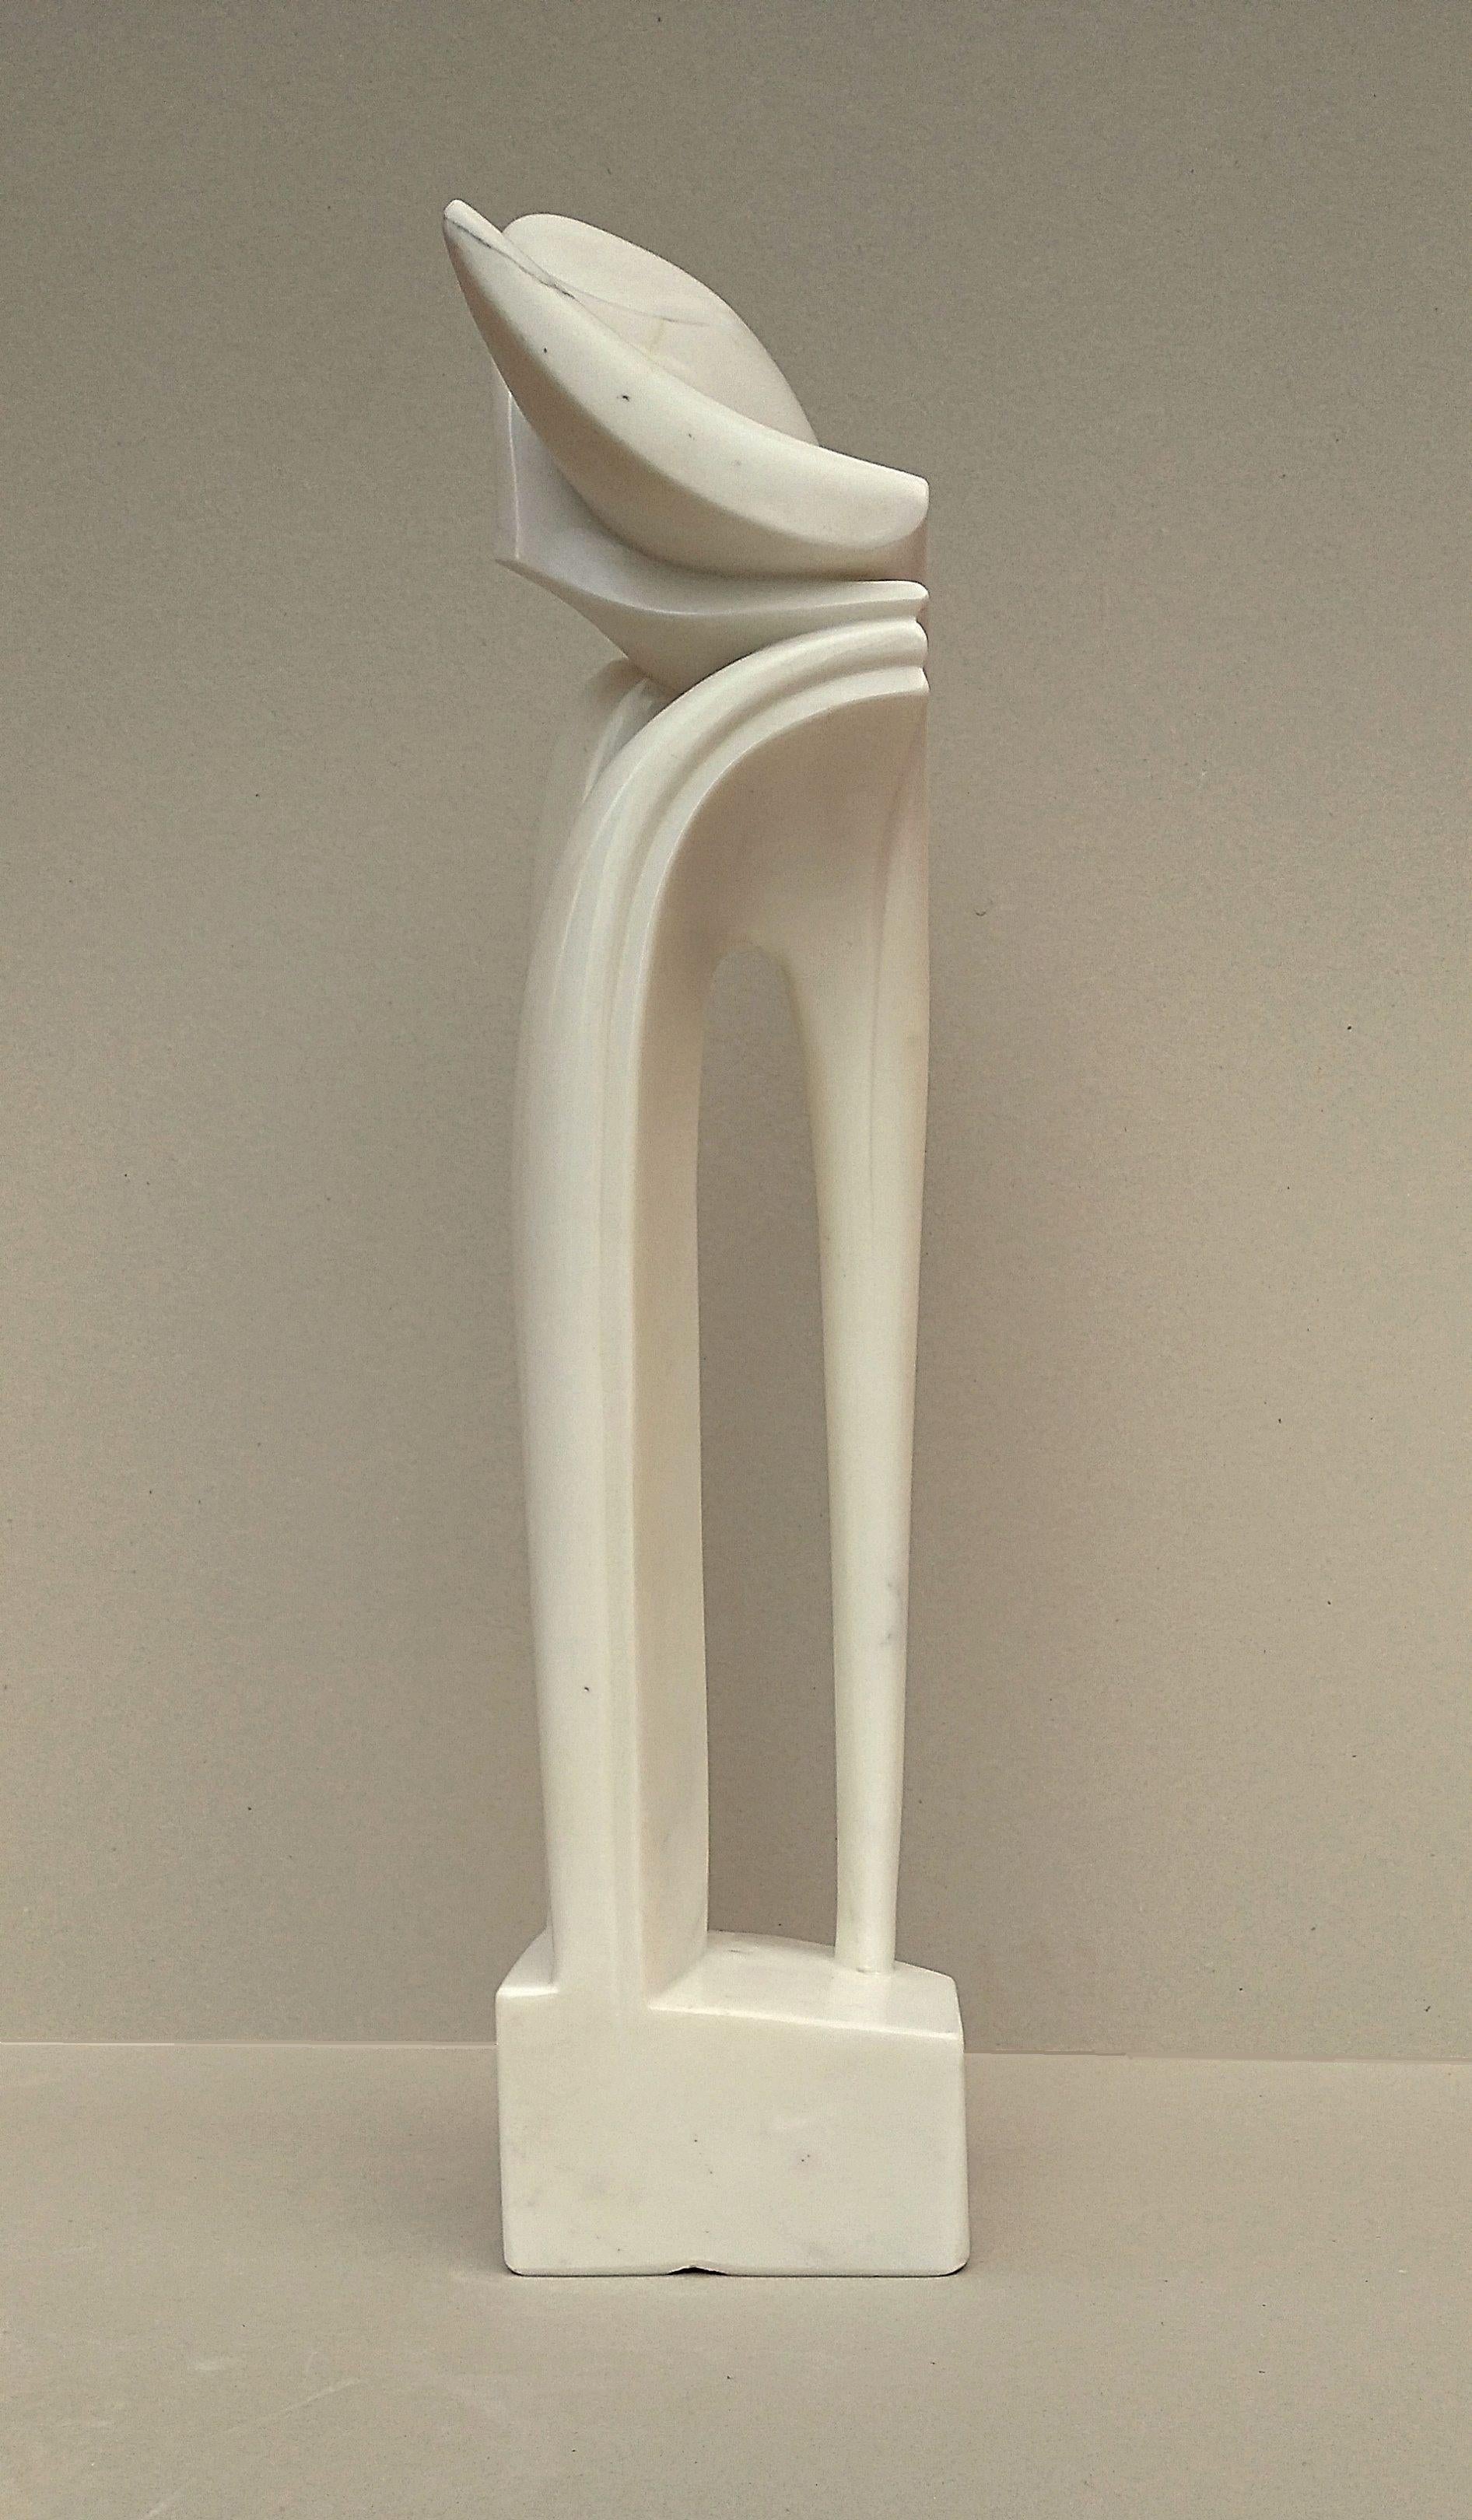 Gebogener Bogen, ungewöhnliche vertikale figurative Skulptur aus weißem Carrara-Statuenmarmorstein – Sculpture von Lutfi Romhein